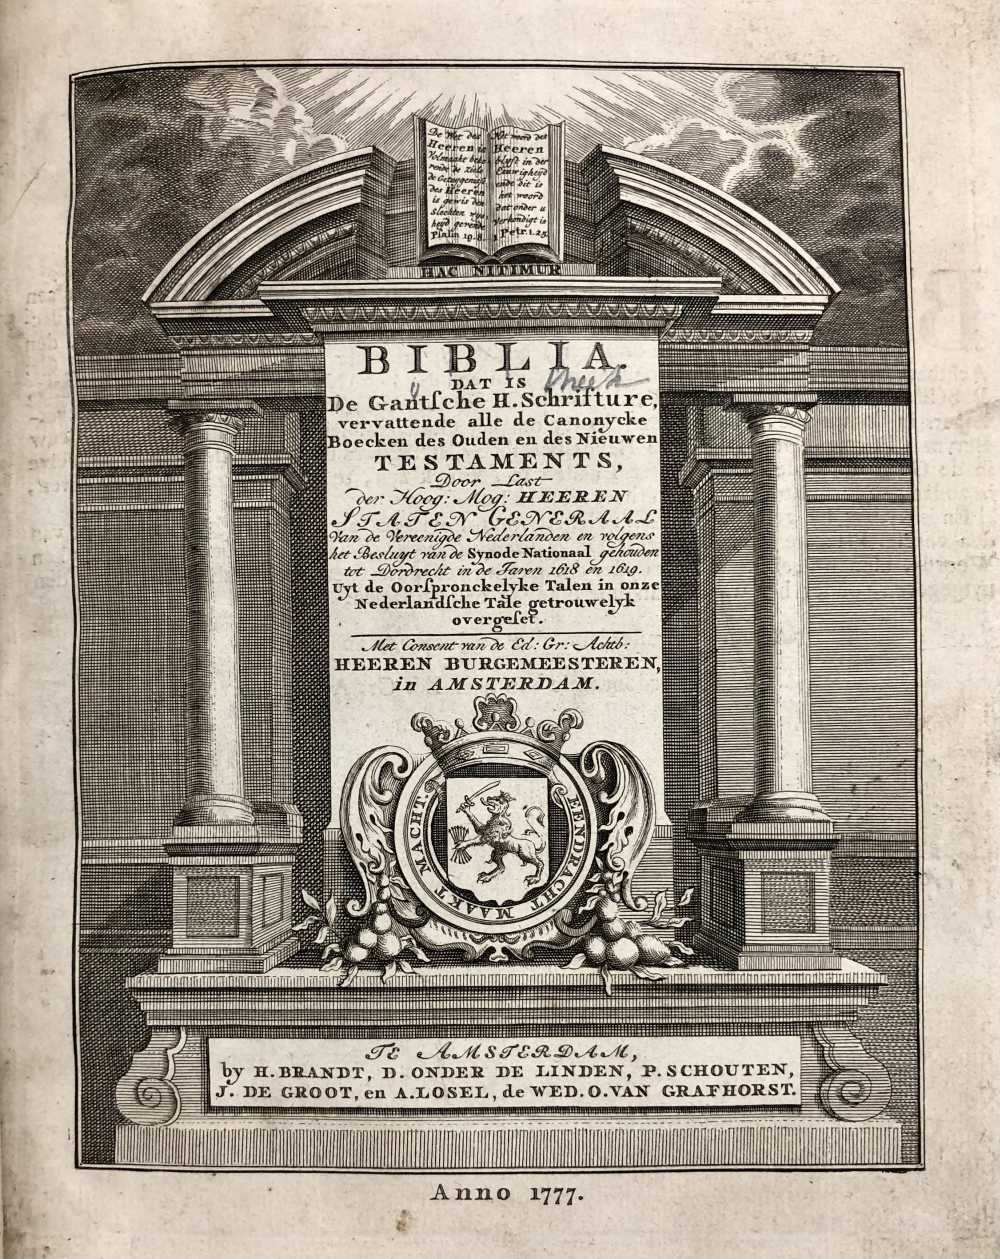 uklu KW C 1629, eerste titelpagina van het convoluut met drie bijbeleditiesuklu KW C 1629, first title page of the convolute with three bible editions